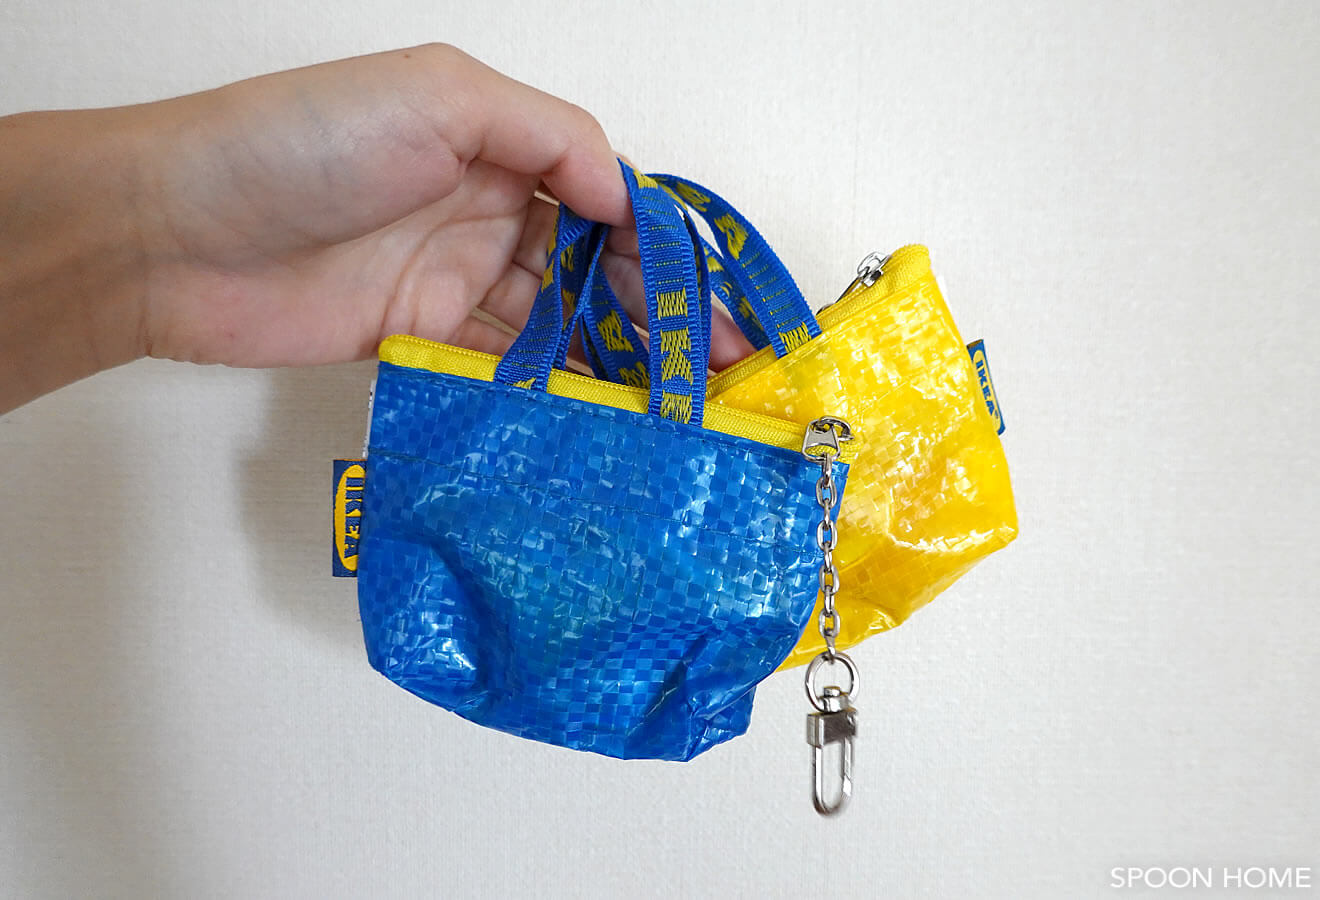 IKEAの青色・黄色のミニバッグ「クノーリグバッグS」ブログ画像